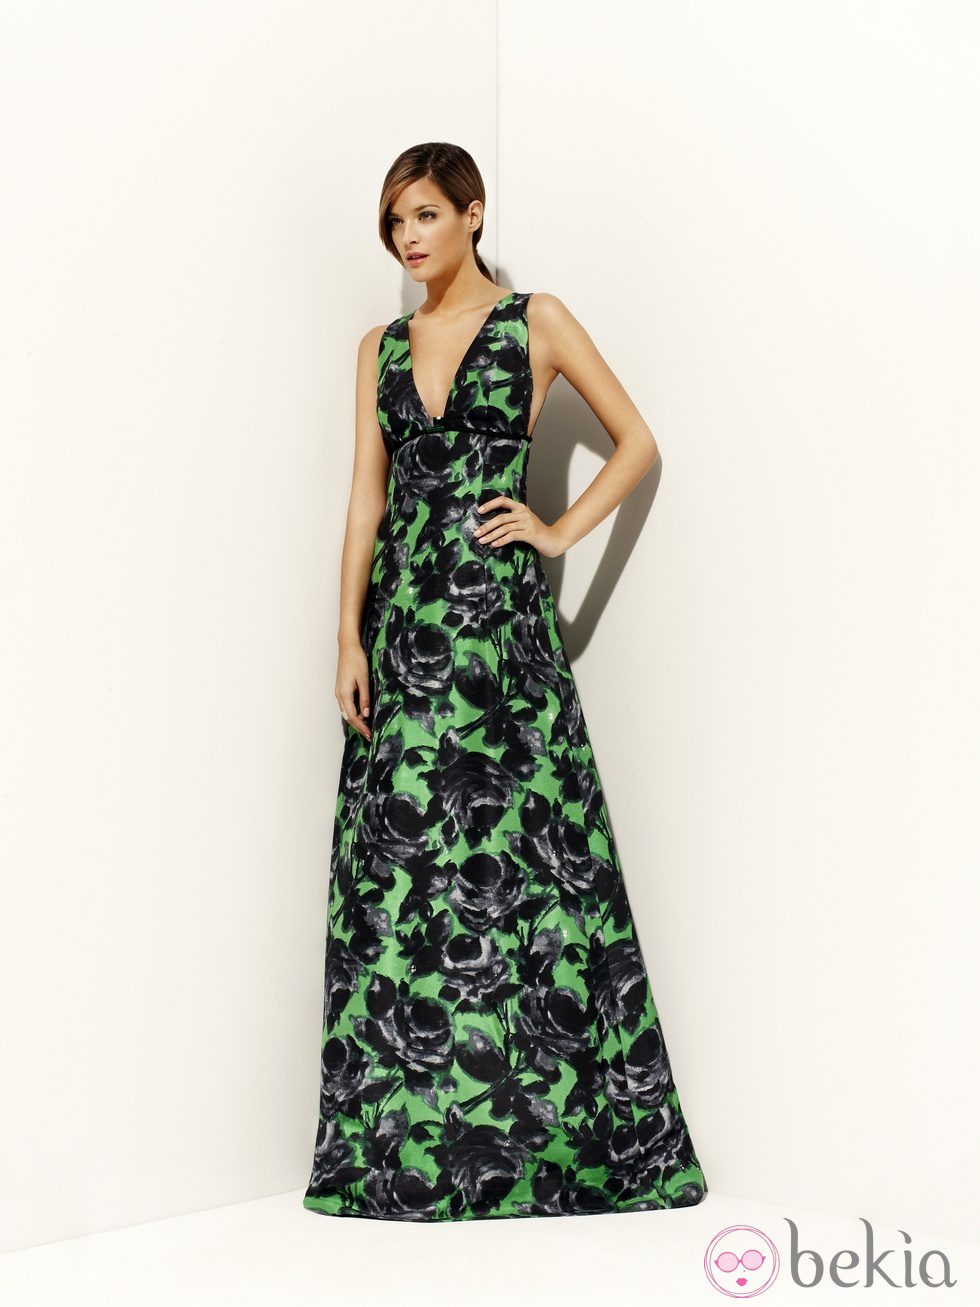 Vestido verde estampado de la colección primavera/verano 2012 de Alta Costura de Pedro del Hierro